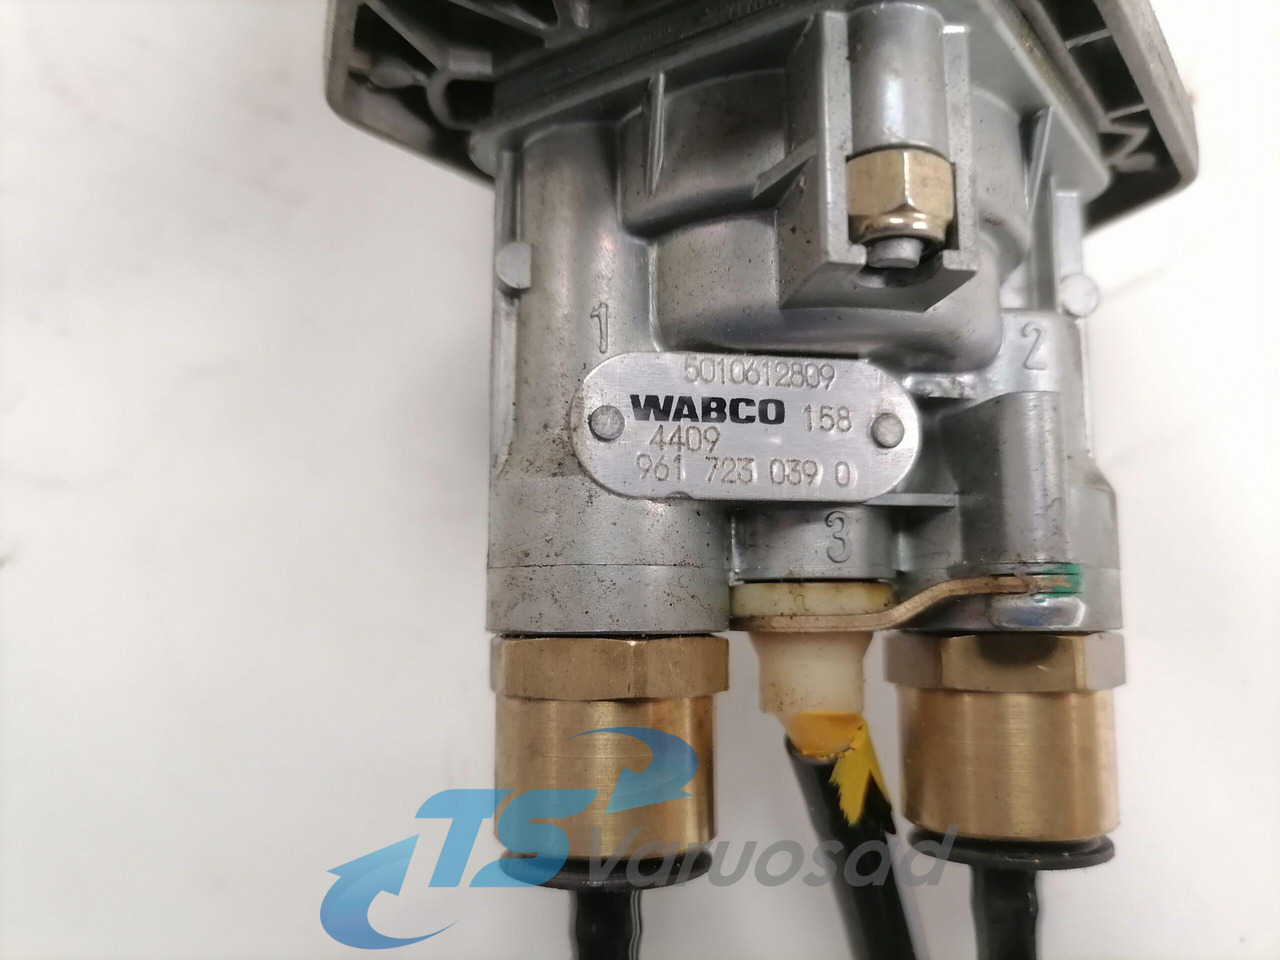 Универсальная запчасть для Грузовиков Volvo Handbrake control lever 5010612809: фото 2